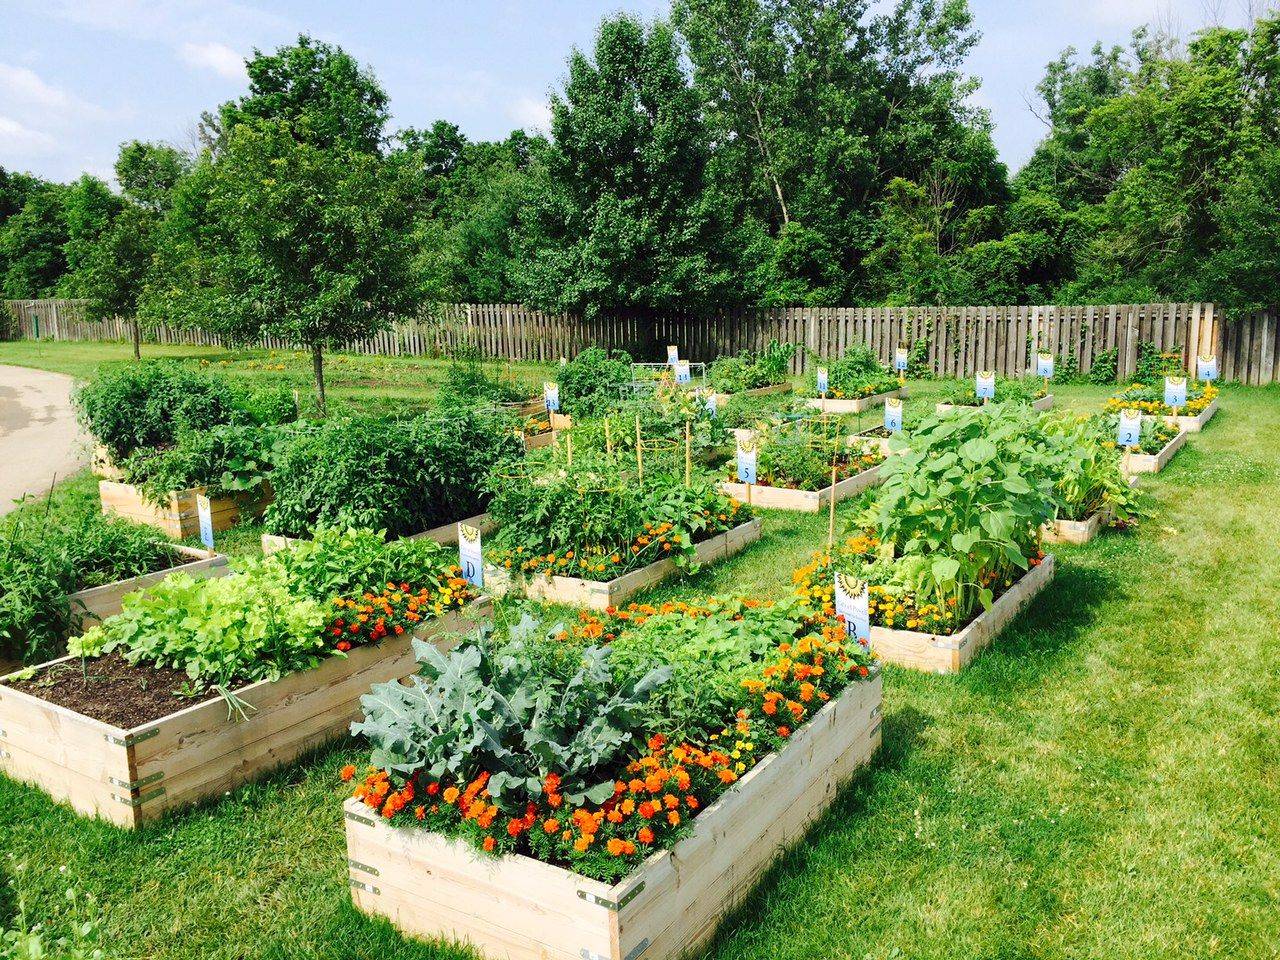 A Community Garden Urban Garden